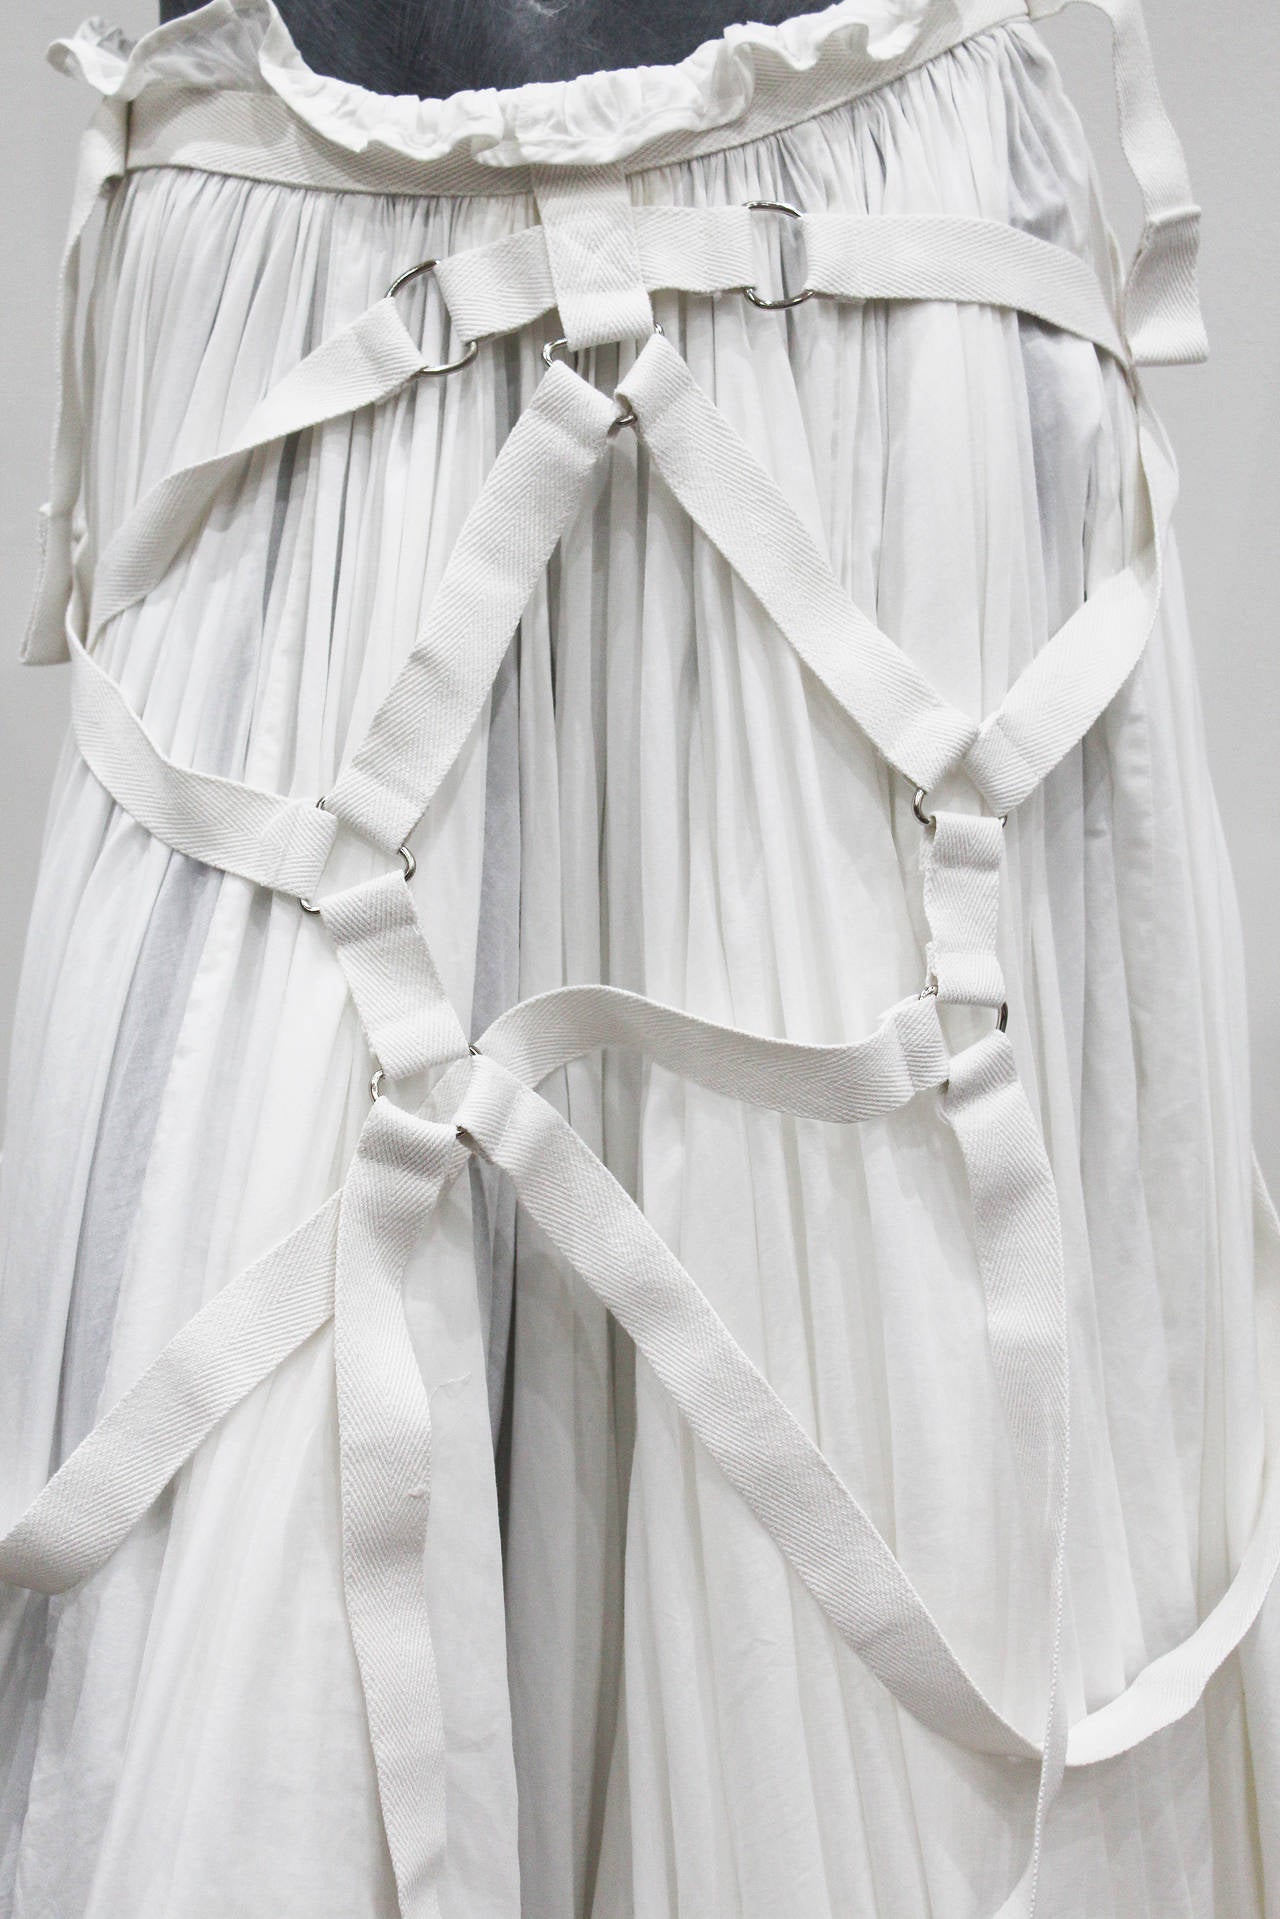 Une jupe en coton blanc plissée et superposée par Junya Watanabe pour COMME des GARCONS. La jupe a été présentée pour la première fois sur la piste de Paris pour la collection printemps-été 2003. La jupe est recouverte de masses de coton blanc et